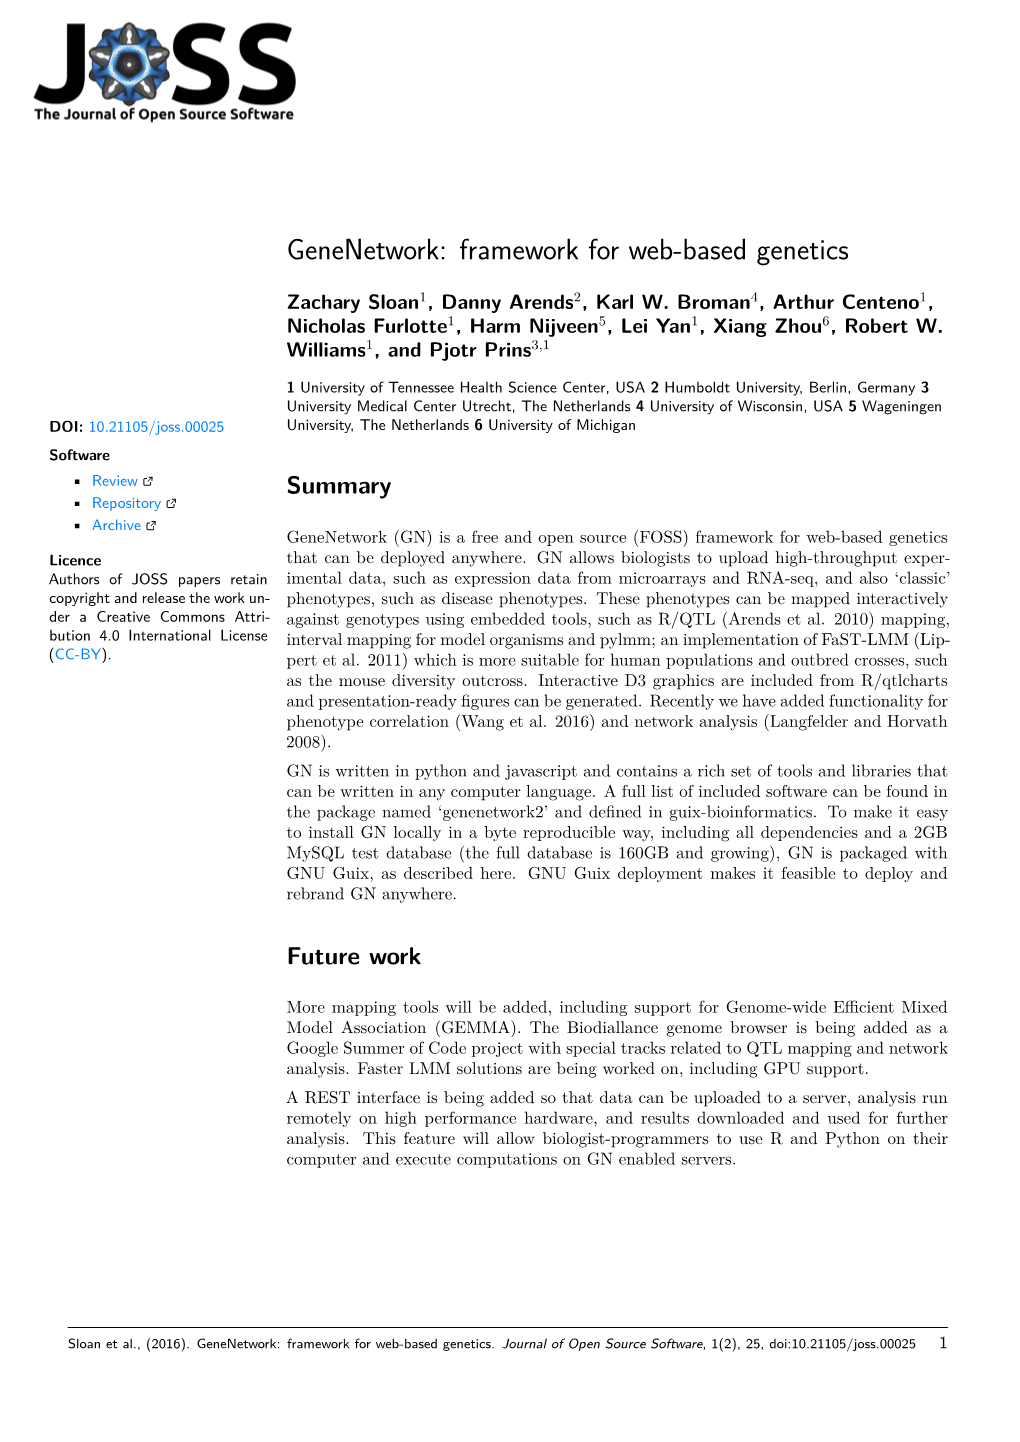 Genenetwork: Framework for Web-Based Genetics